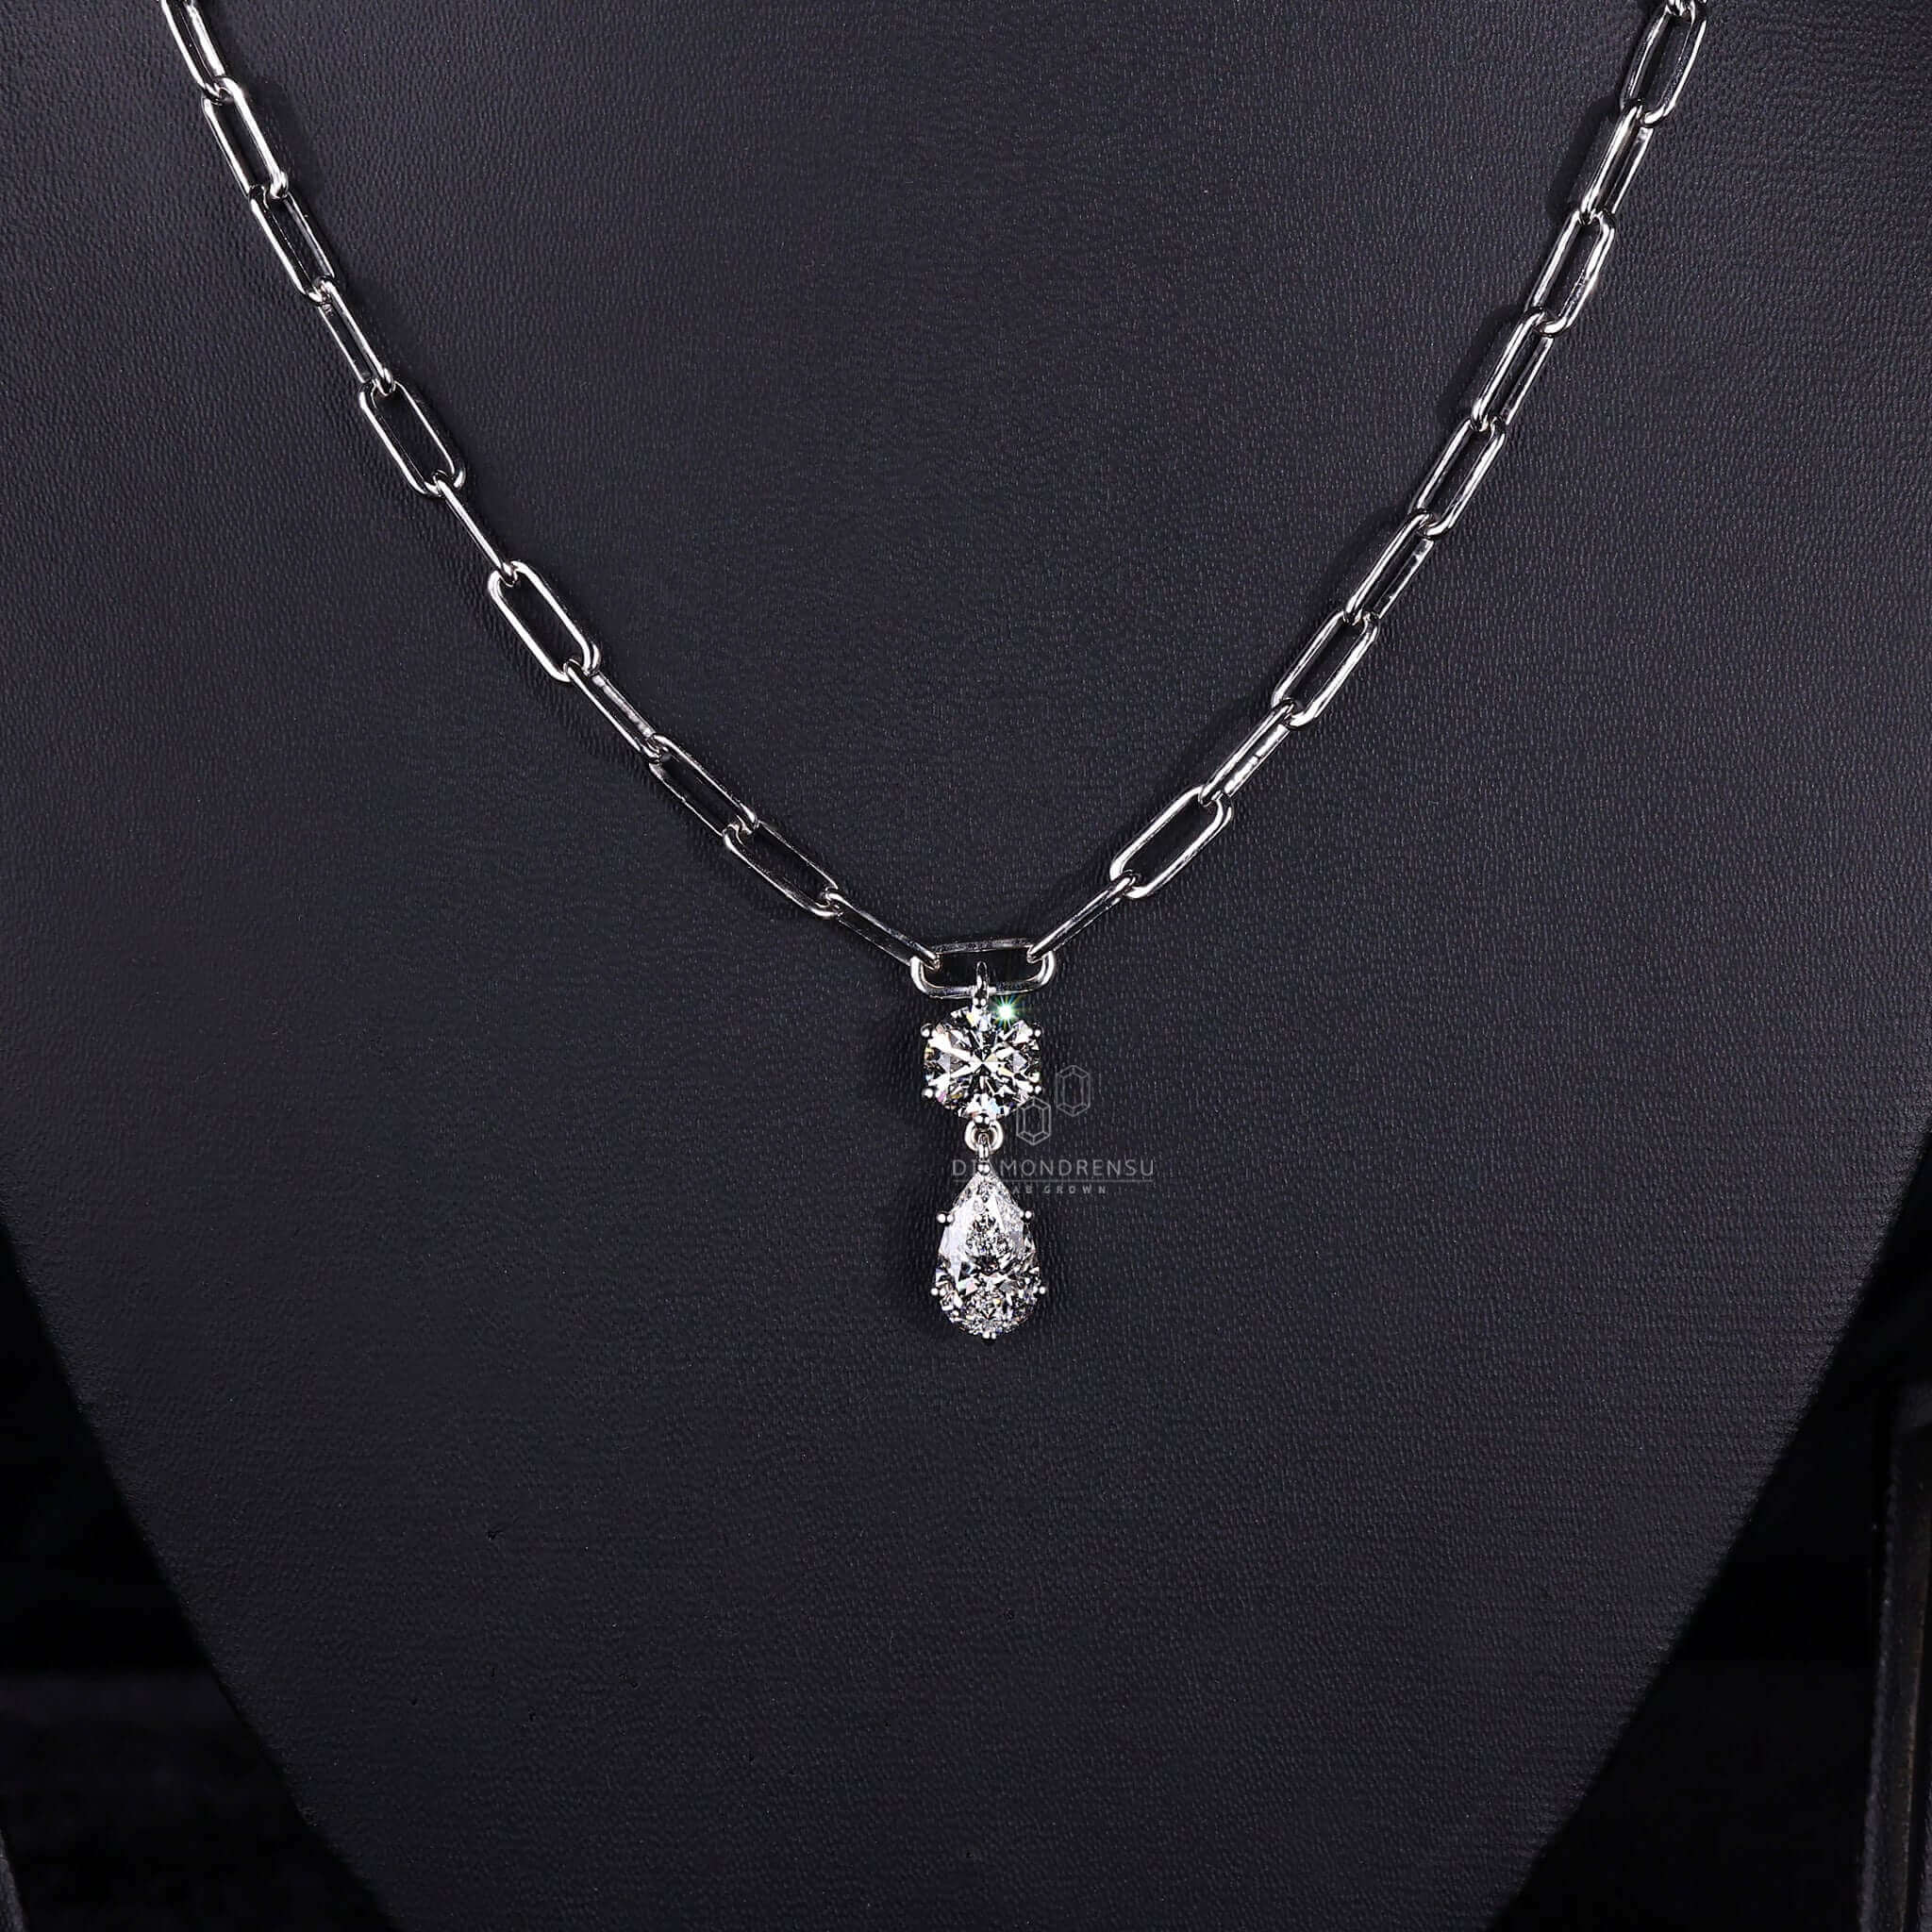 lab created diamond pendant